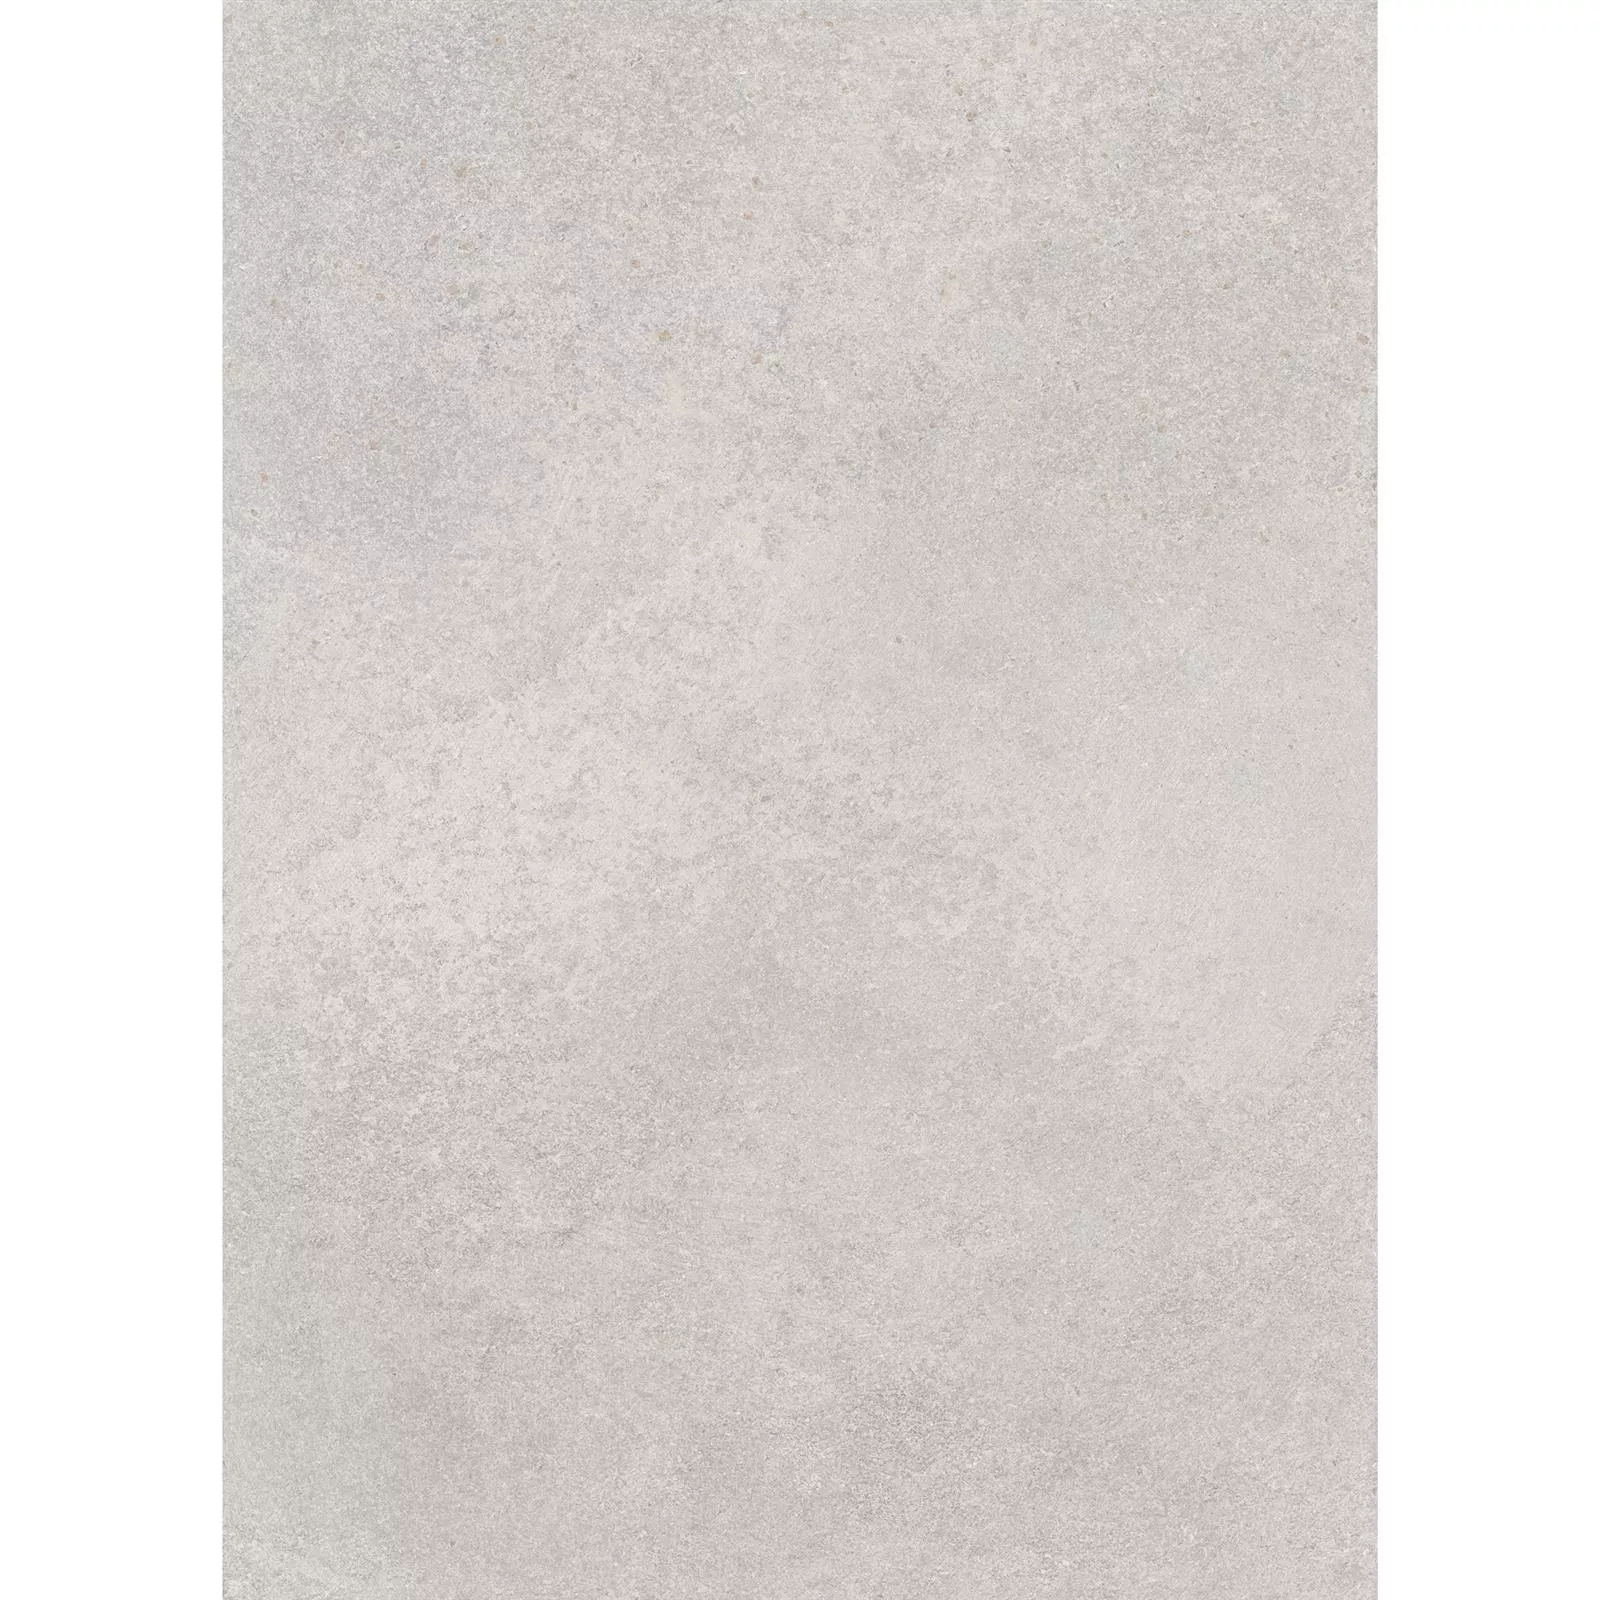 Πλακάκια Δαπέδου Πέτρινη Όψη Horizon Γκρί 60x120cm